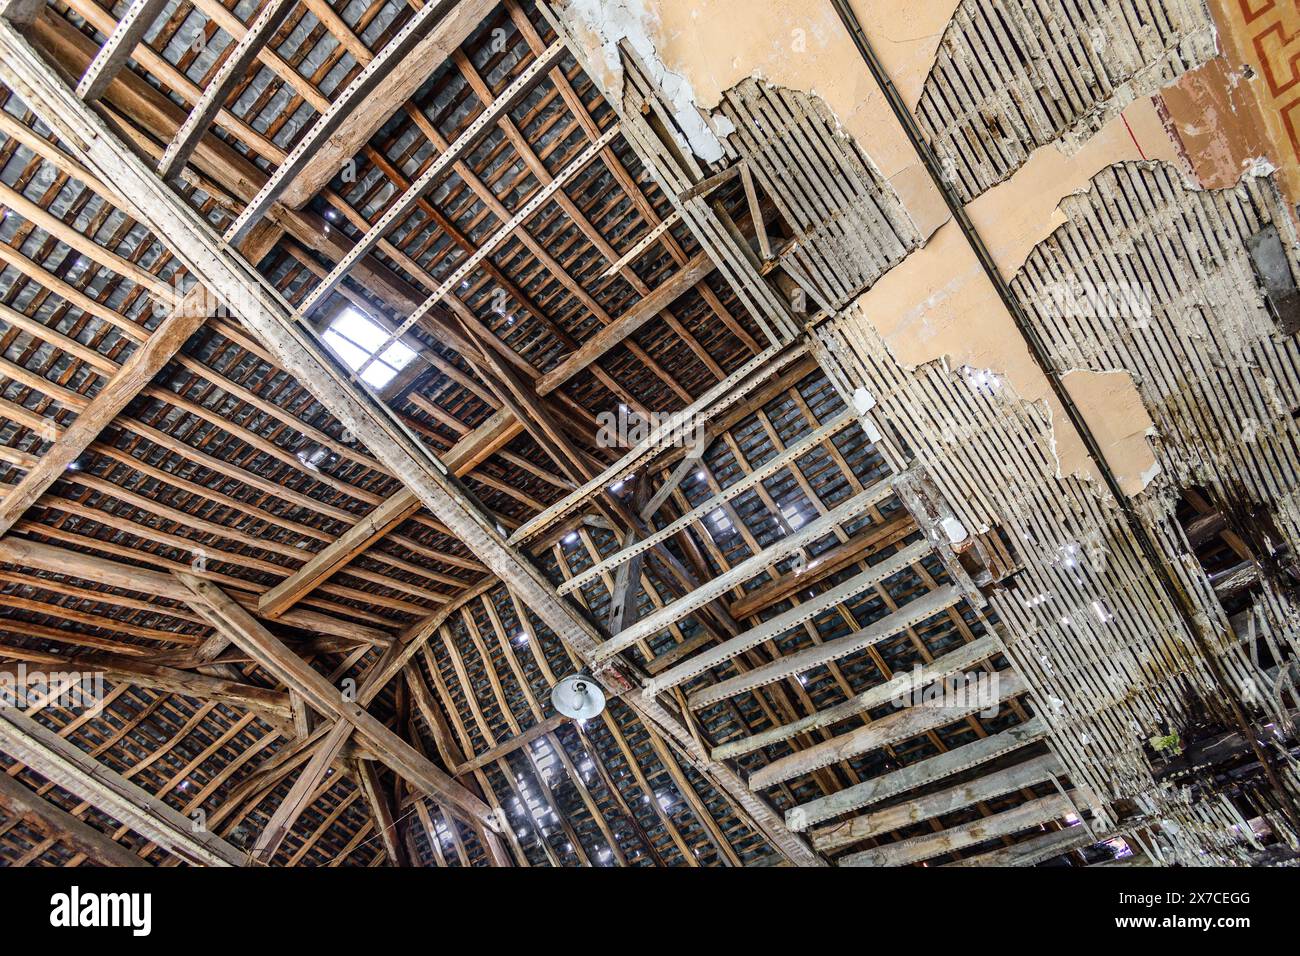 Soffitto cromato che rivela travi e listelli nella struttura del tetto - Argenton-sur-Creuse, Indre (36), Francia. Foto Stock